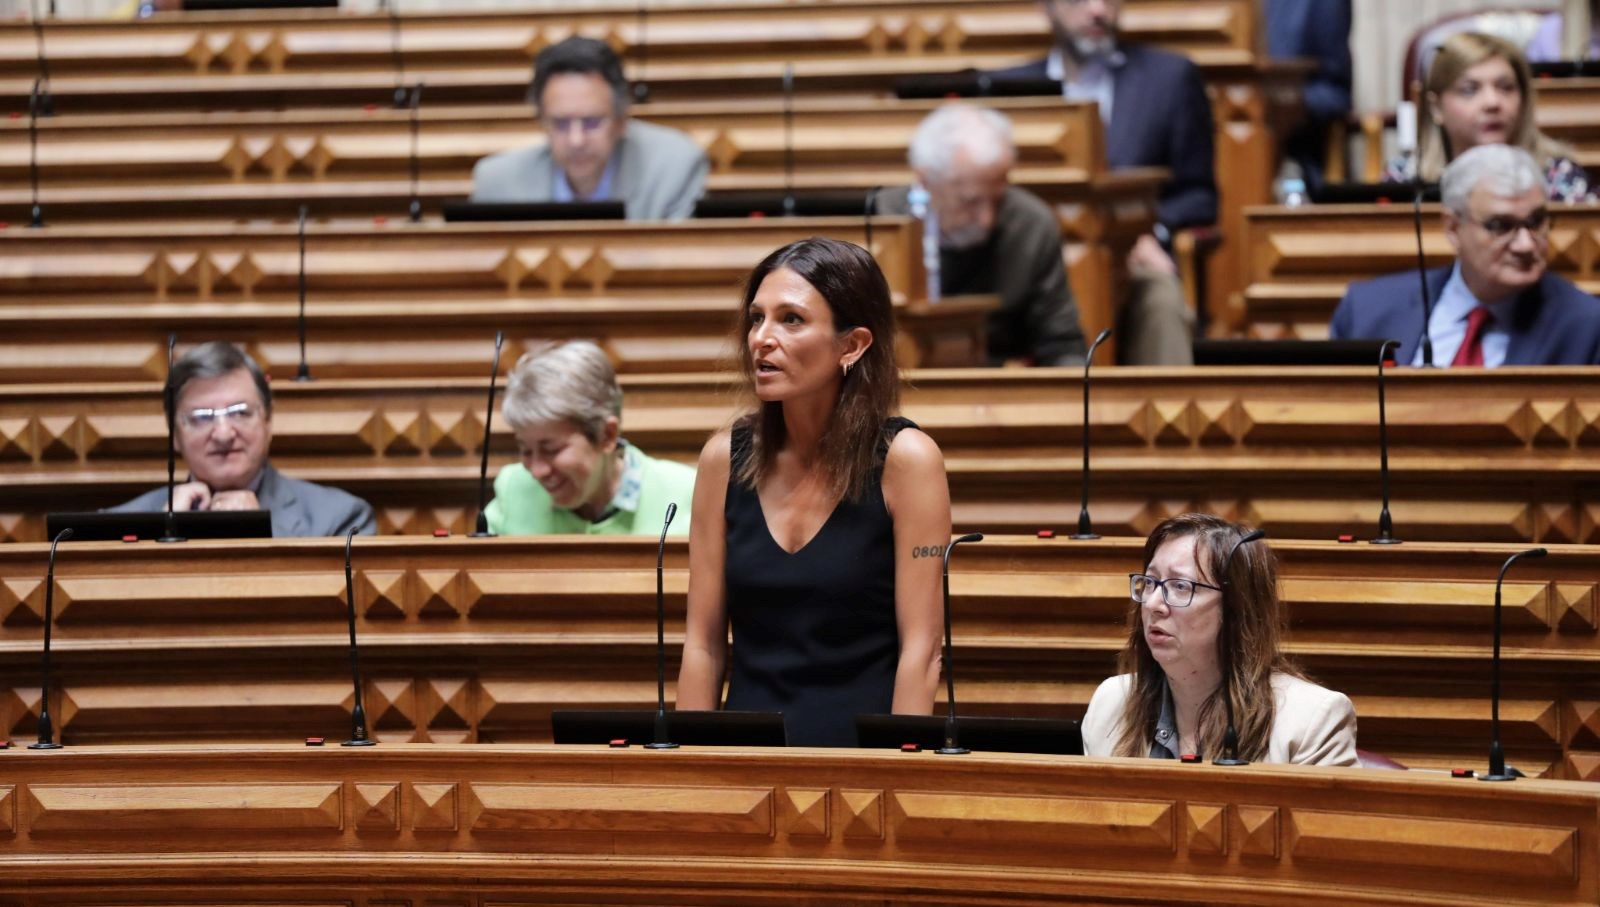 Portekiz parlamentosu ötenazi yasasını oylayarak kabul etti